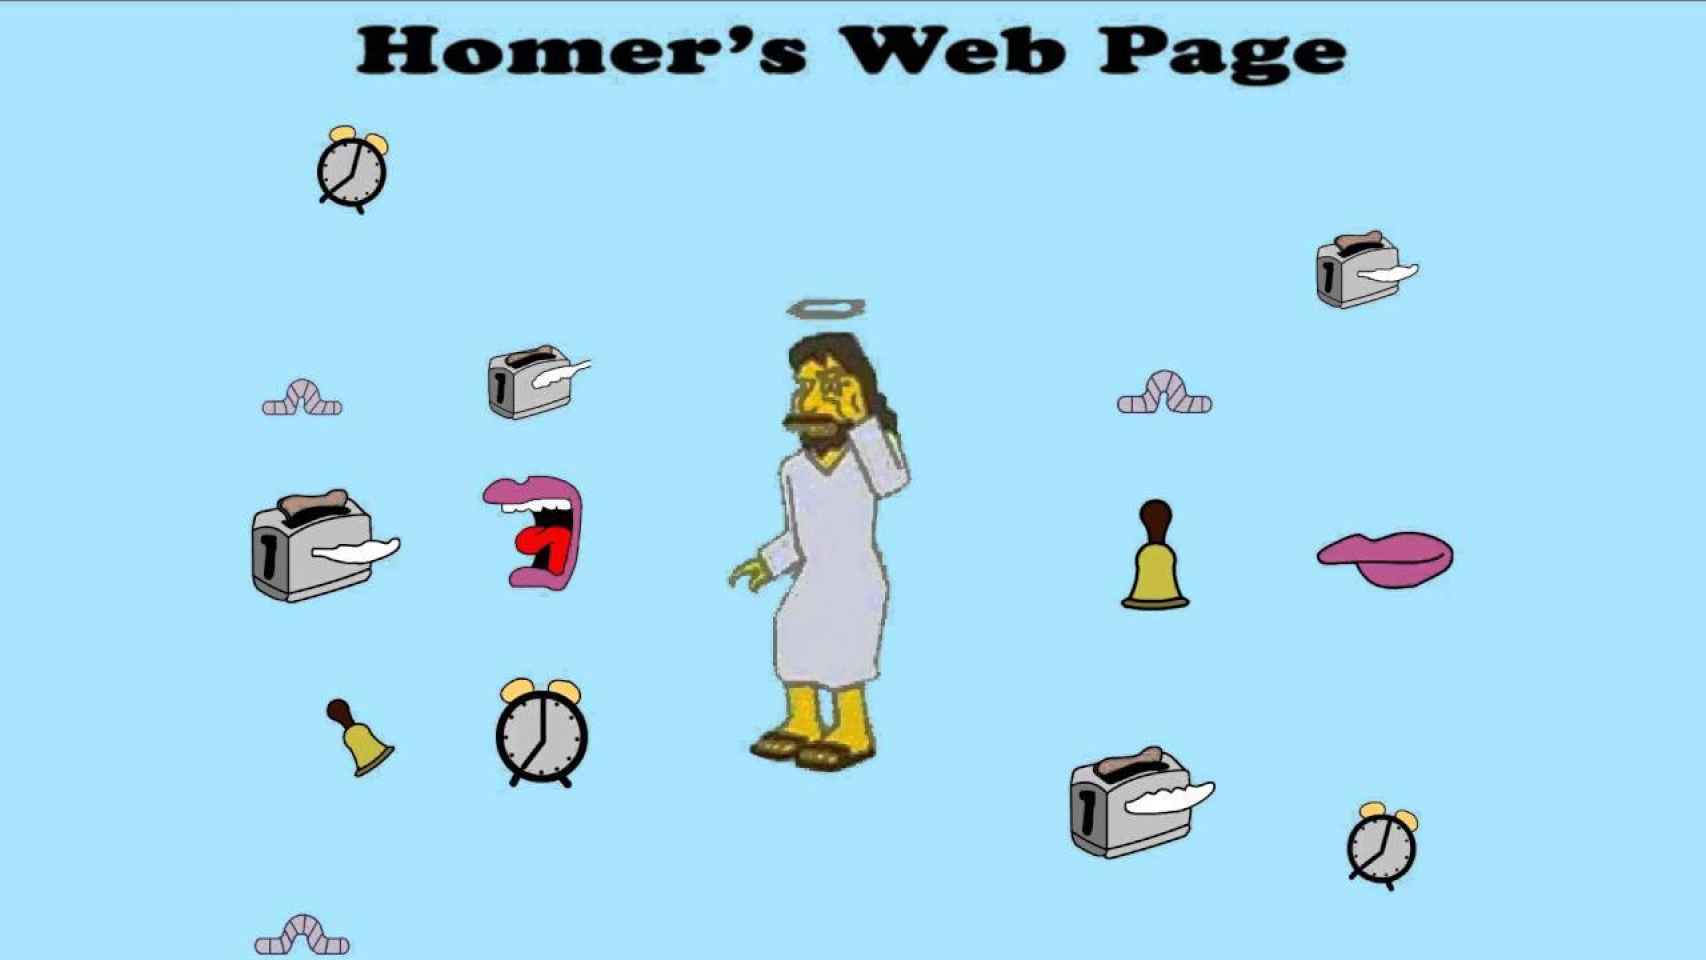 La página web de Homer Simpson